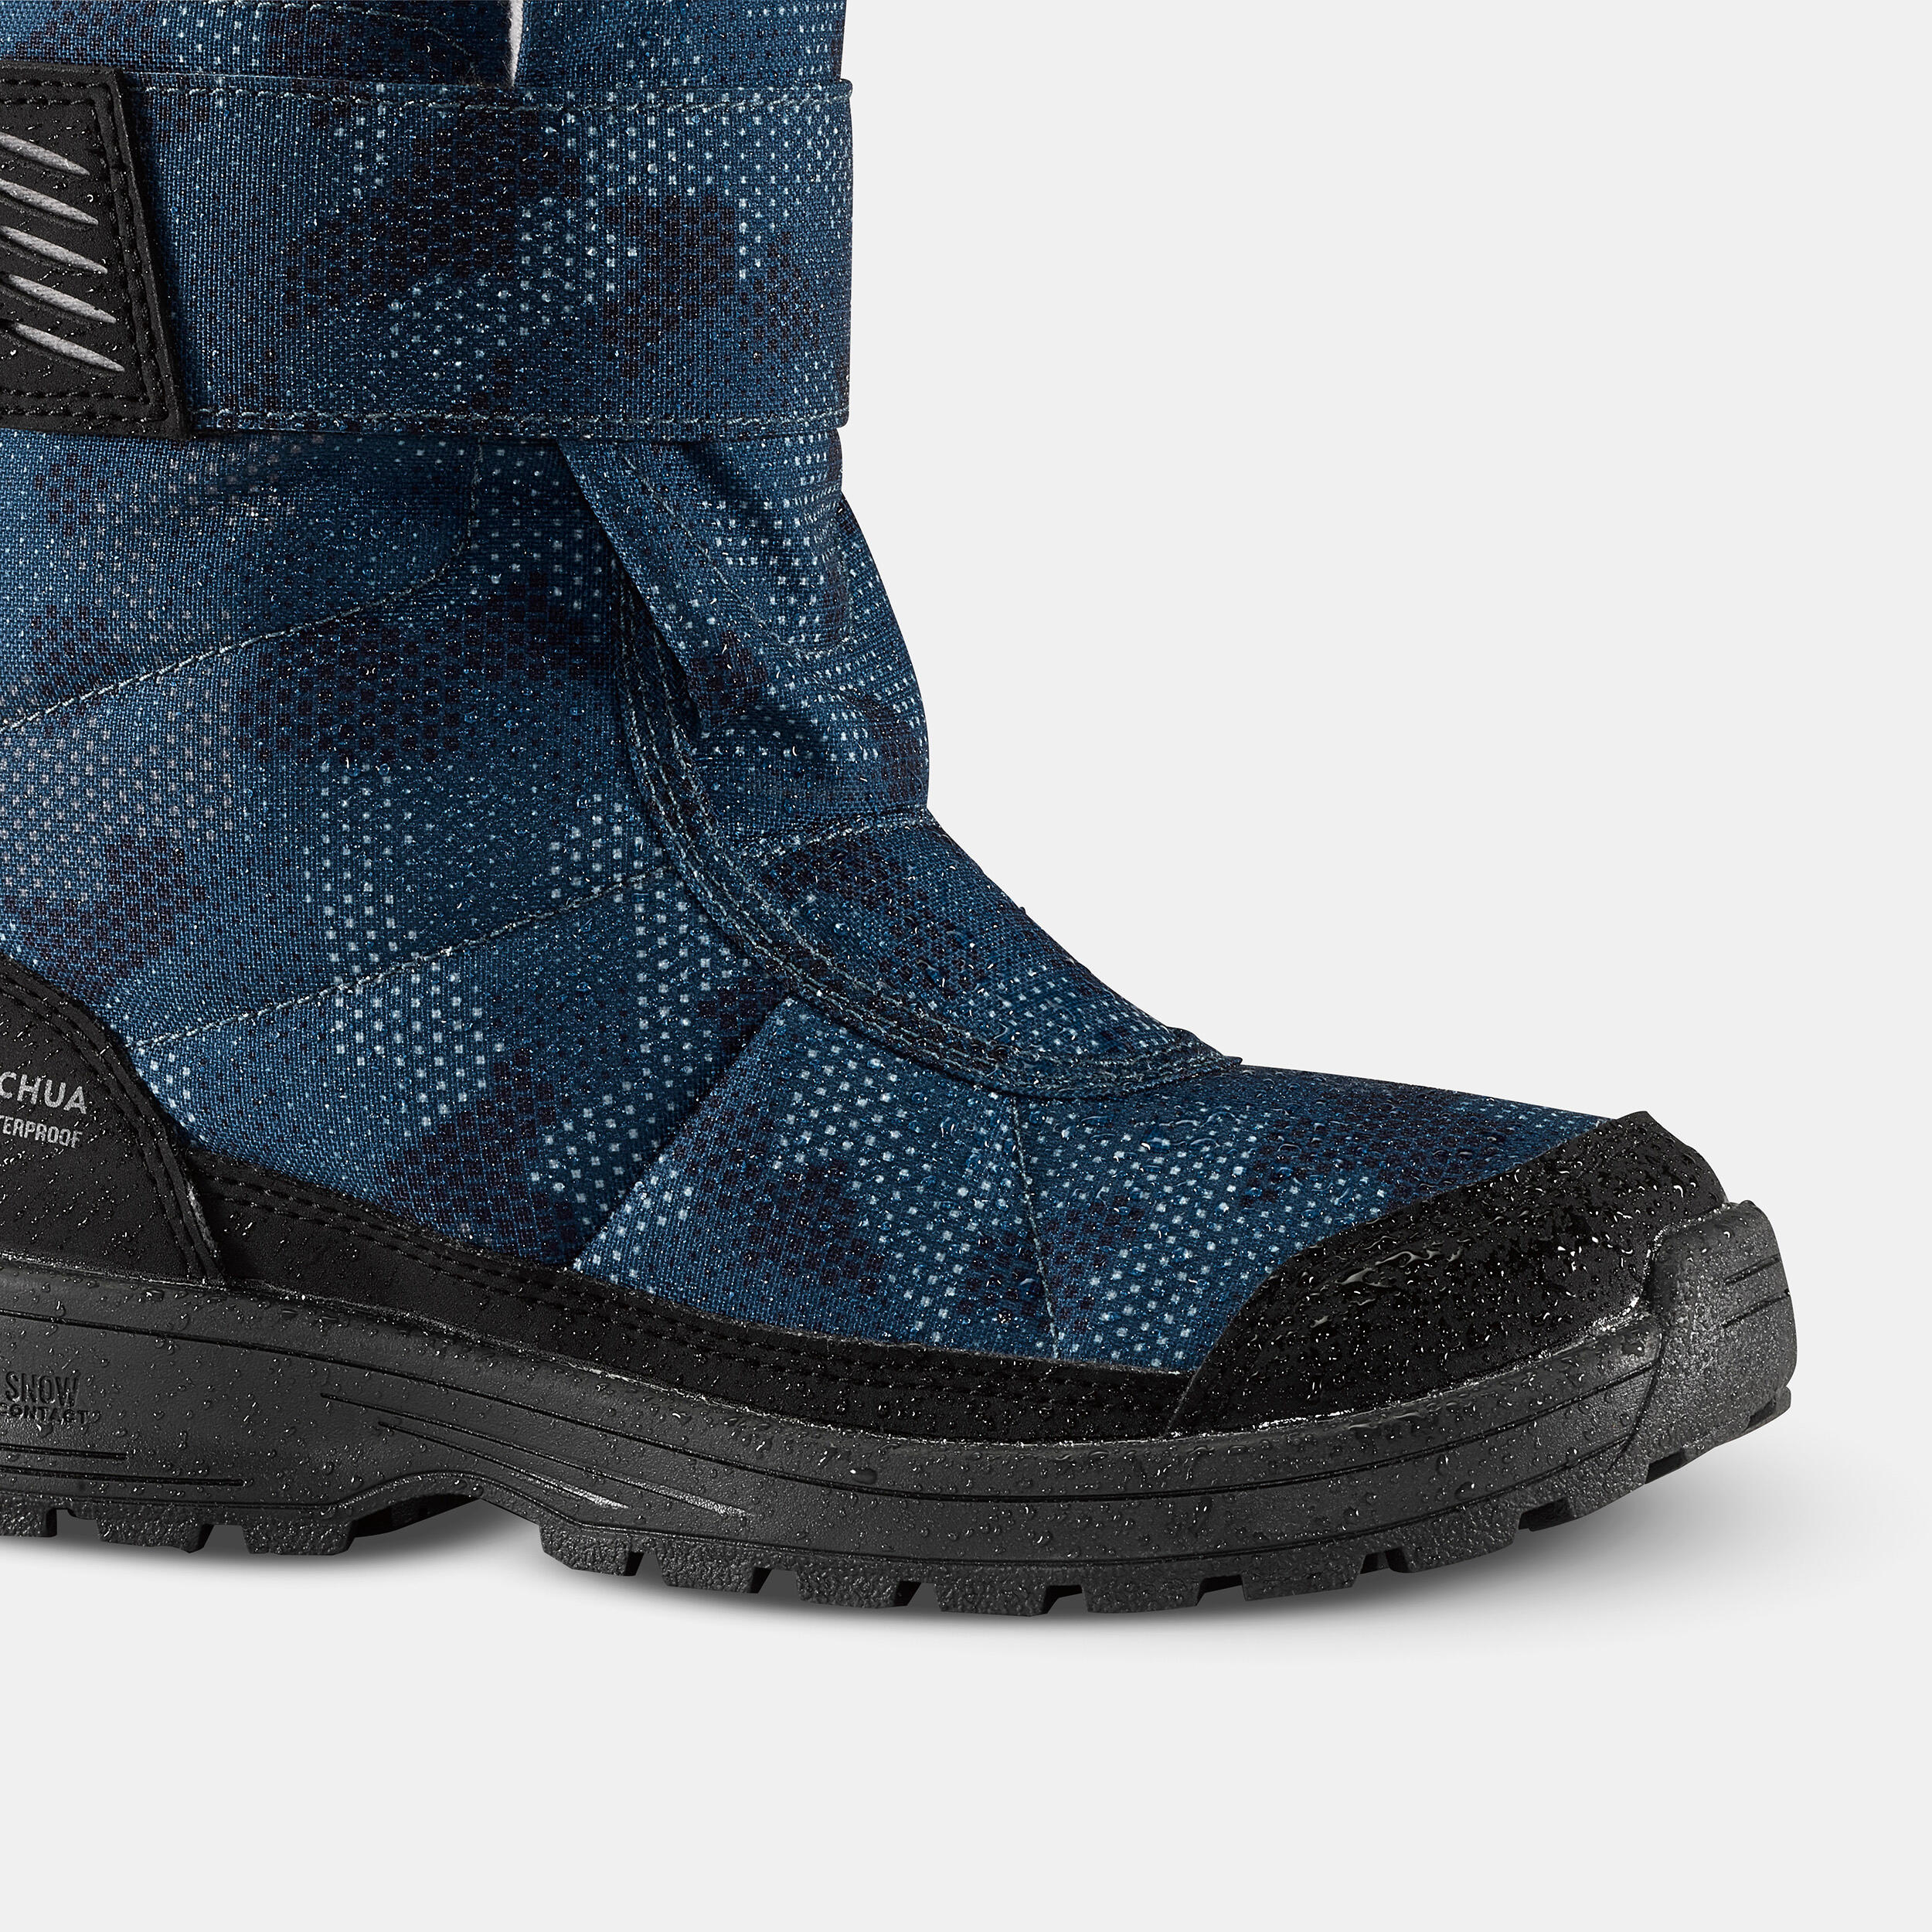 Kids’ Warm Waterproof Snow Hiking Boots SH100 X-Warm Size 7 - 5.5 2/8